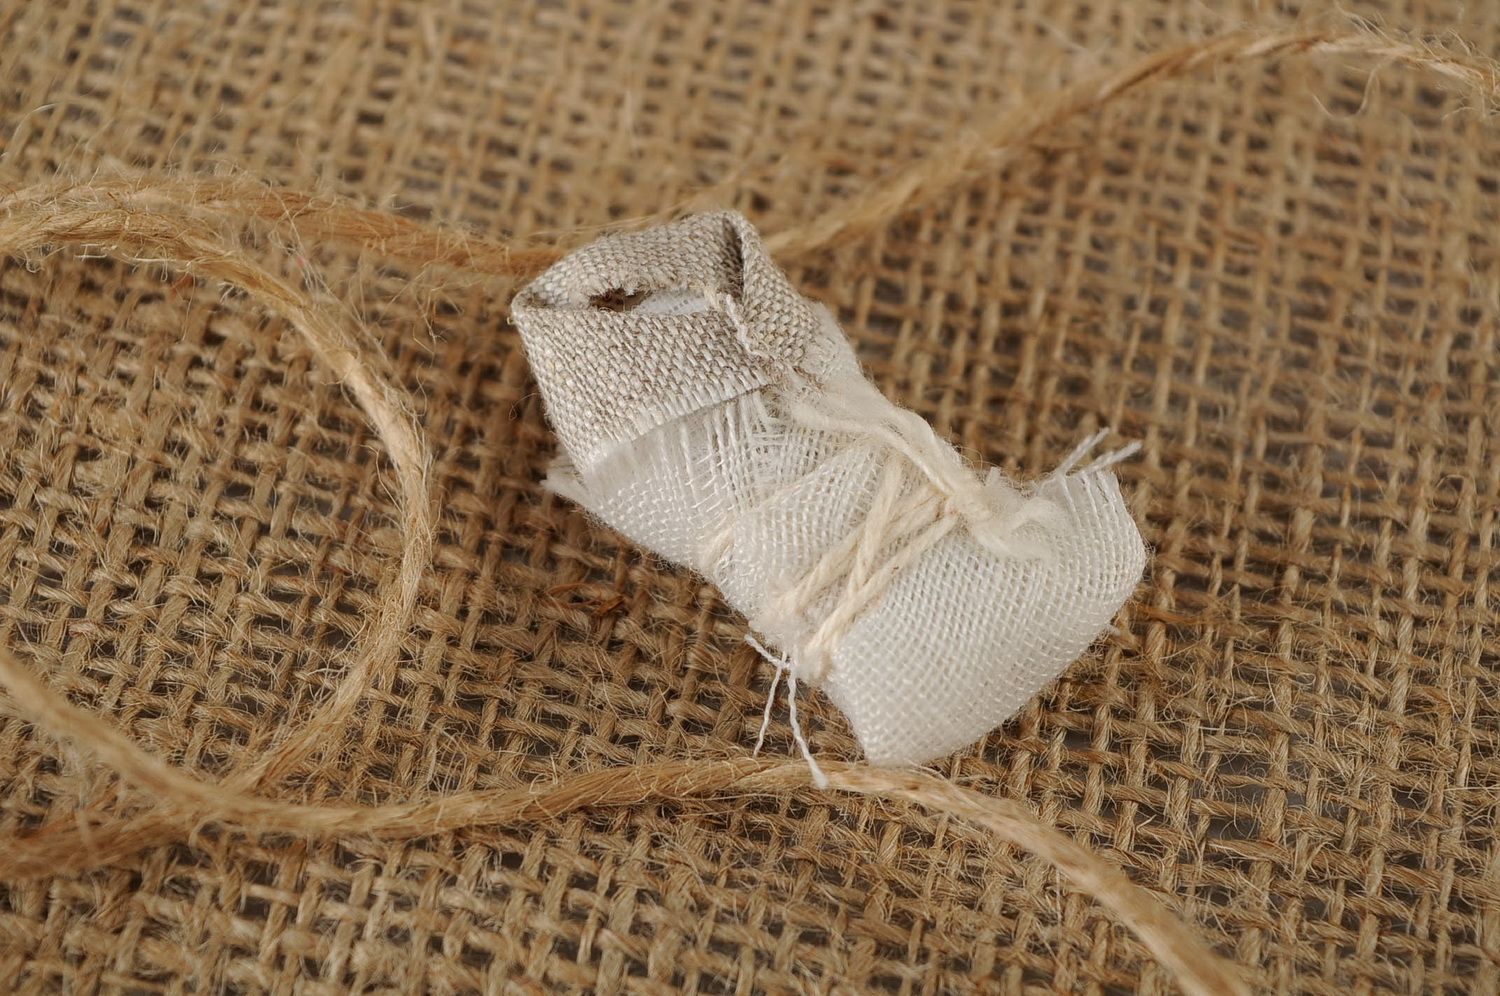 Bambola di stoffa fatta a mano amuleto talismano giocattolo etnico slavo foto 1